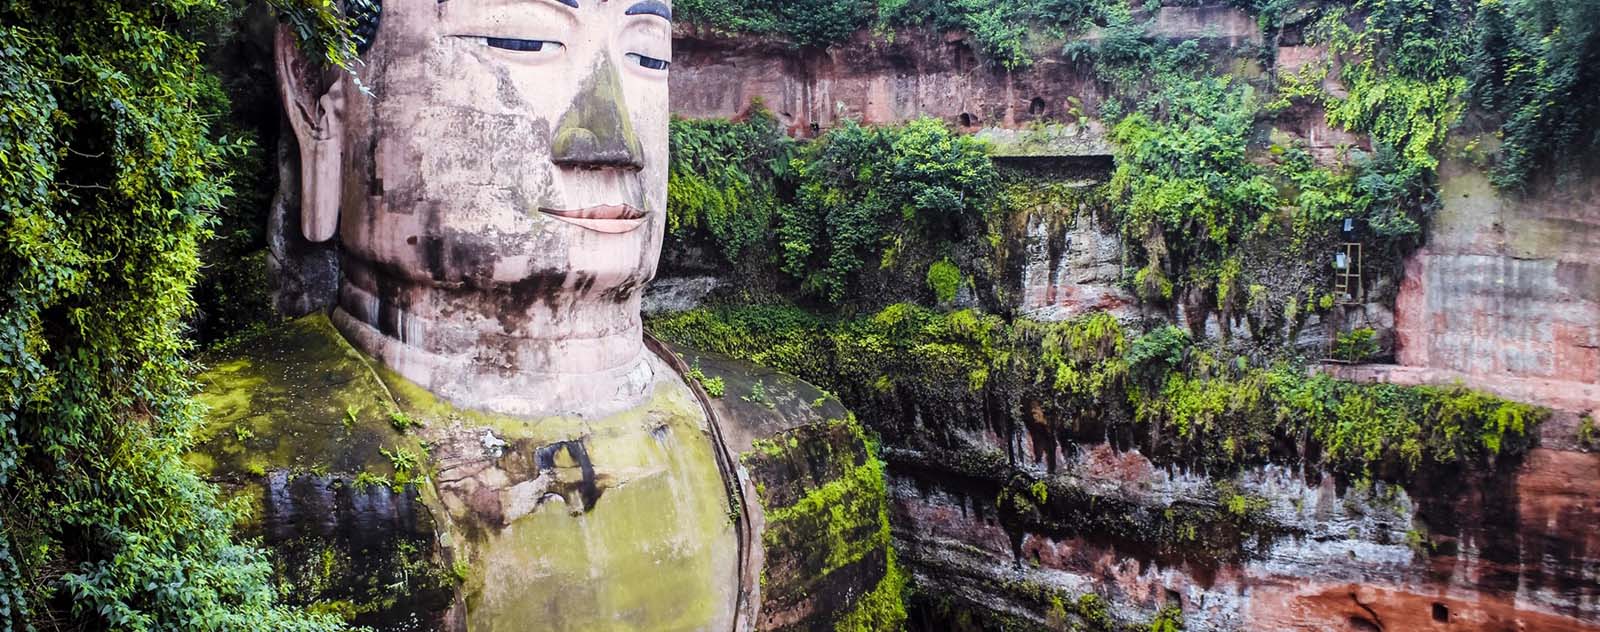 Les 10 statues de Bouddha les plus impressionnantes du monde !